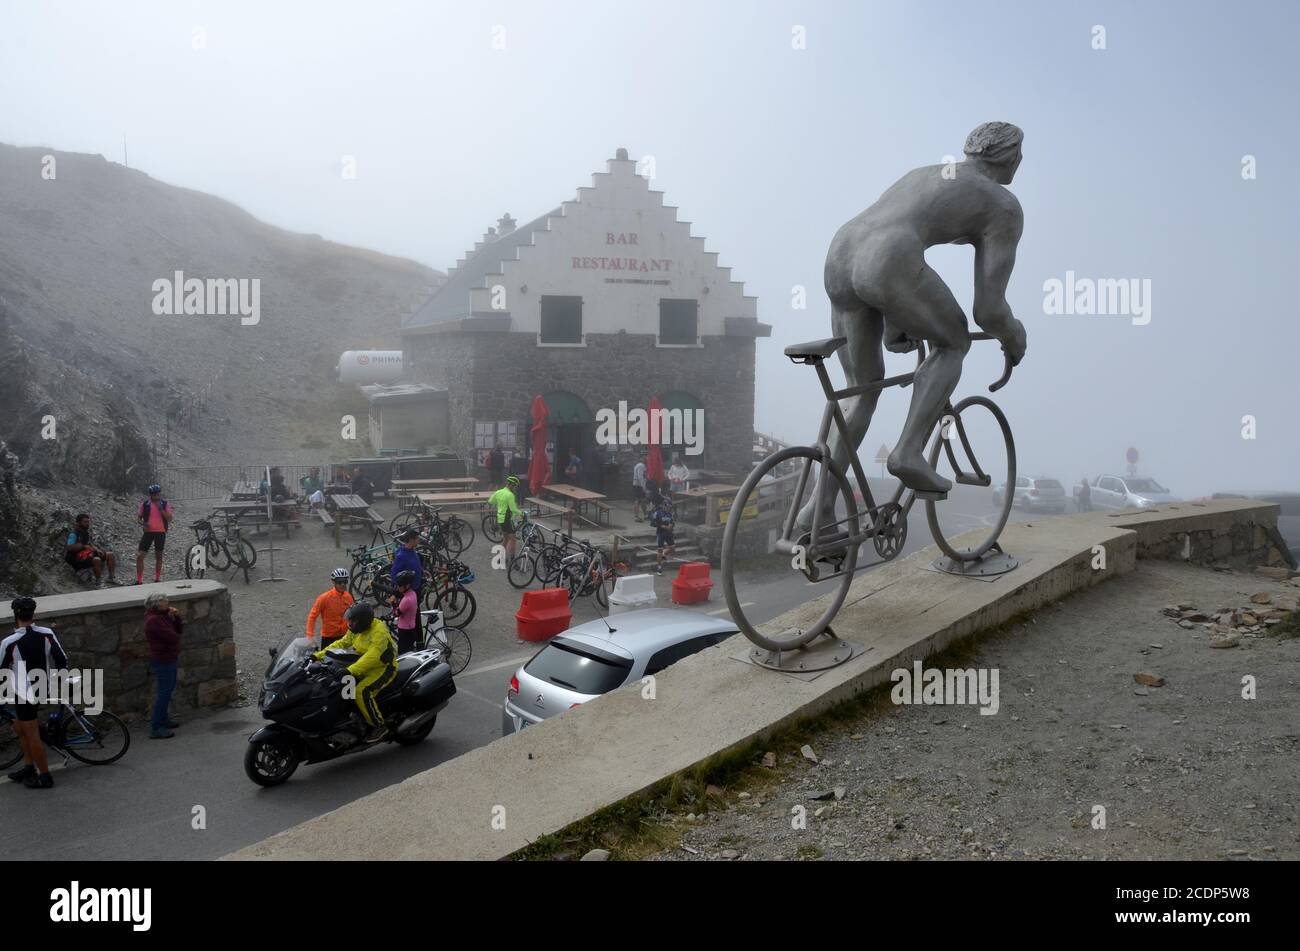 La cima del col du Tourmalet nella catena montuosa dei Pirenei (2115 m), Francia meridionale. Un'opera d'arte rende omaggio ai ciclisti del Tour de France. Foto Stock